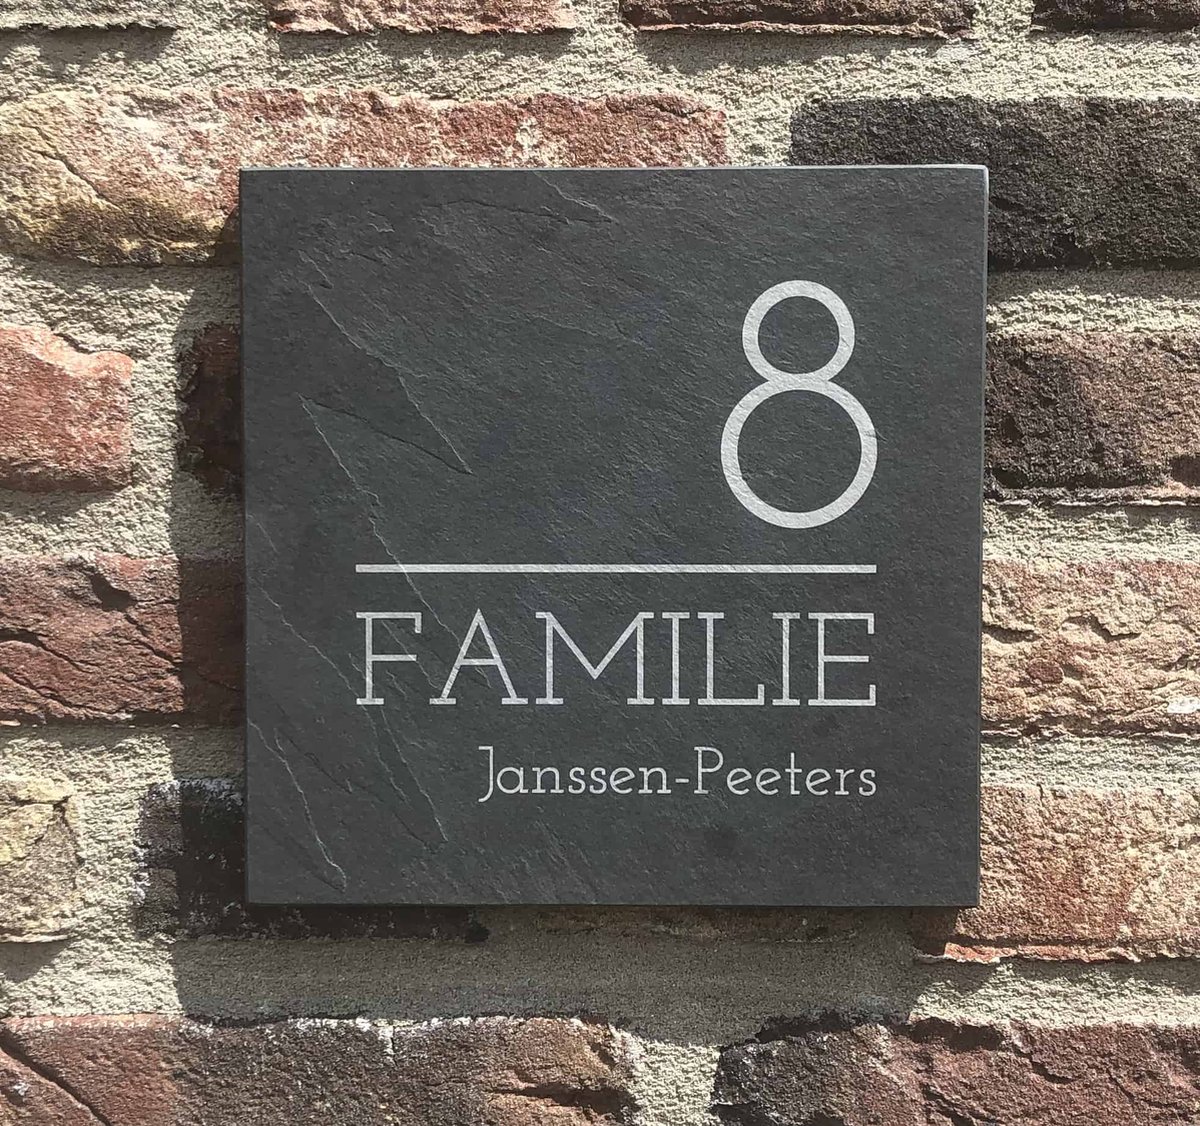 Gepersonaliseerd huisnummer - Leistenen huisnummer - Personelijk gegraveerd met familienamen - Moderne antraciet leistenen huisnummer 10 x10 cm